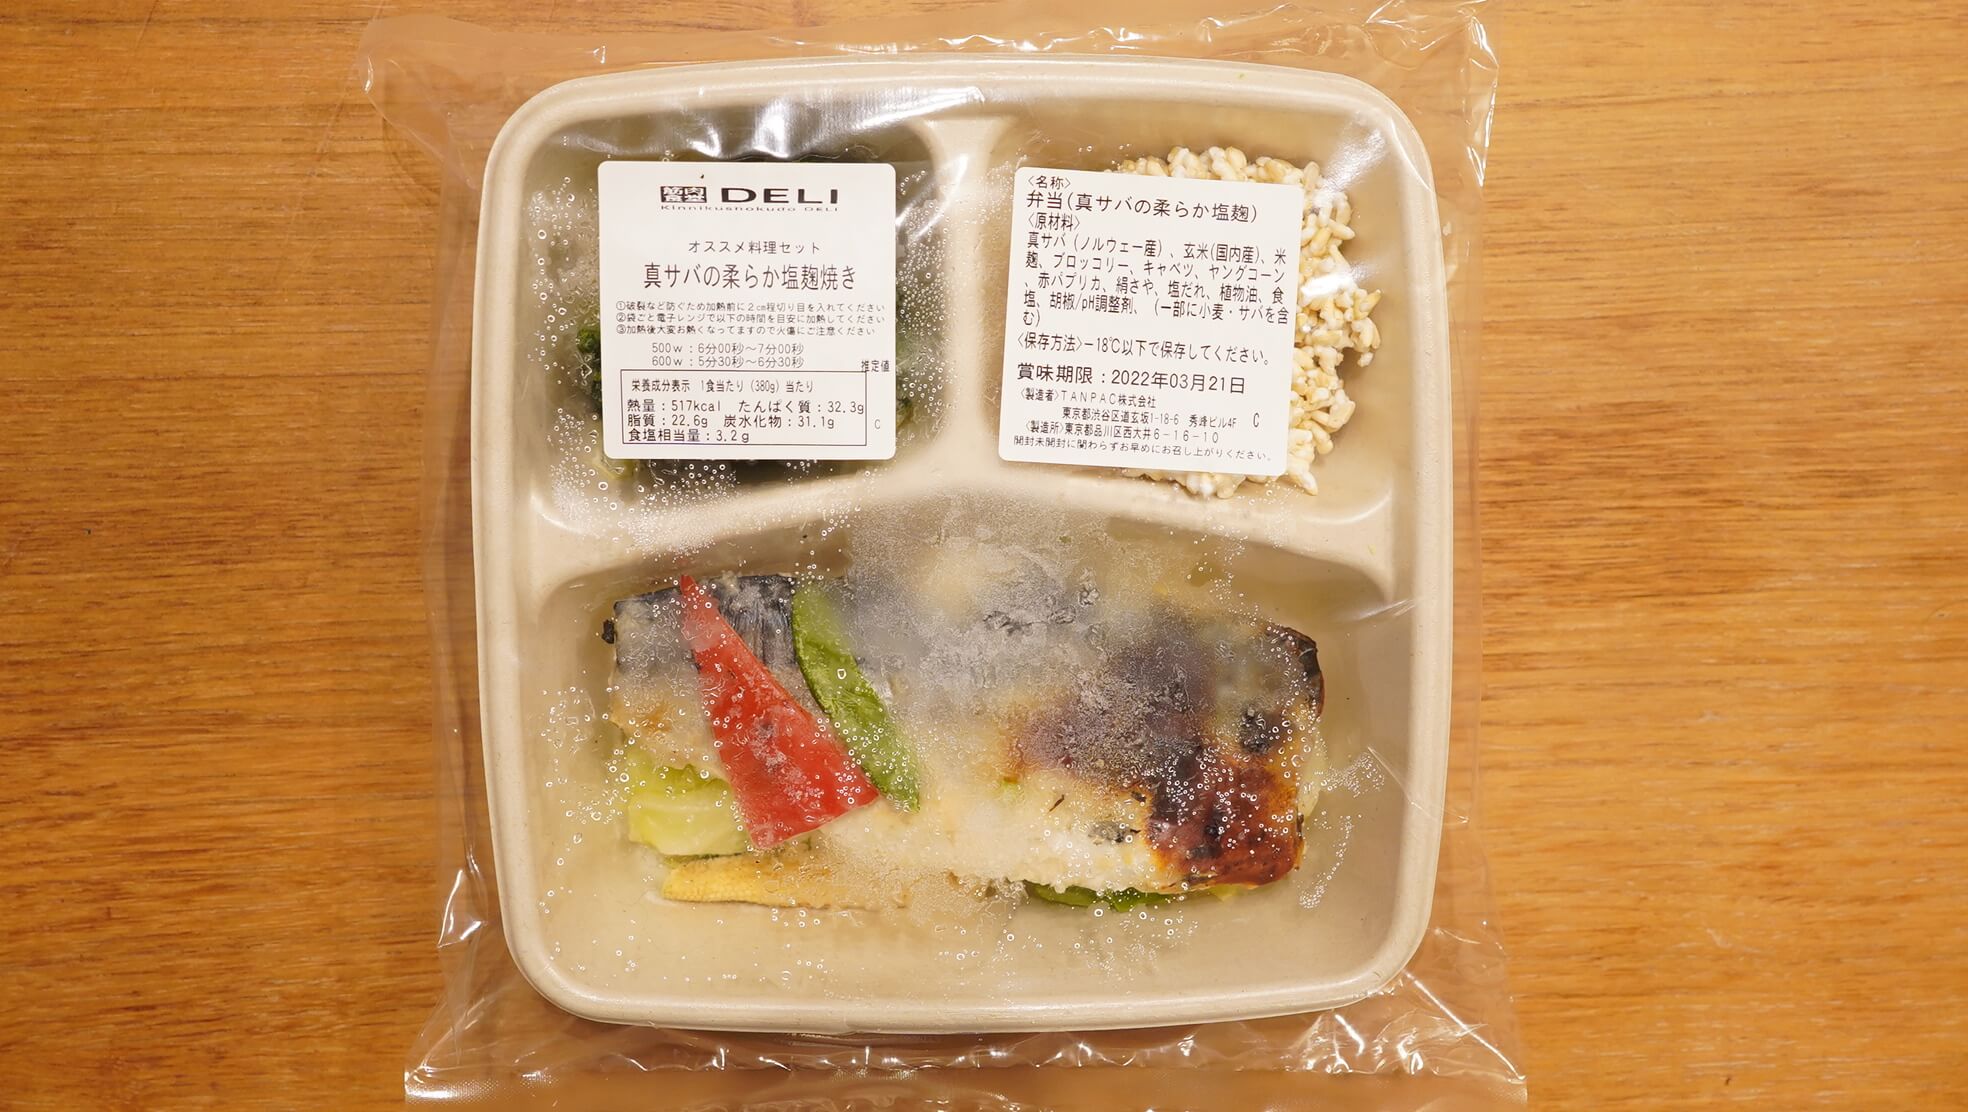 通販で買える宅配弁当「筋肉食堂deli」のメニュー「真サバの柔らか塩麹焼き」の写真